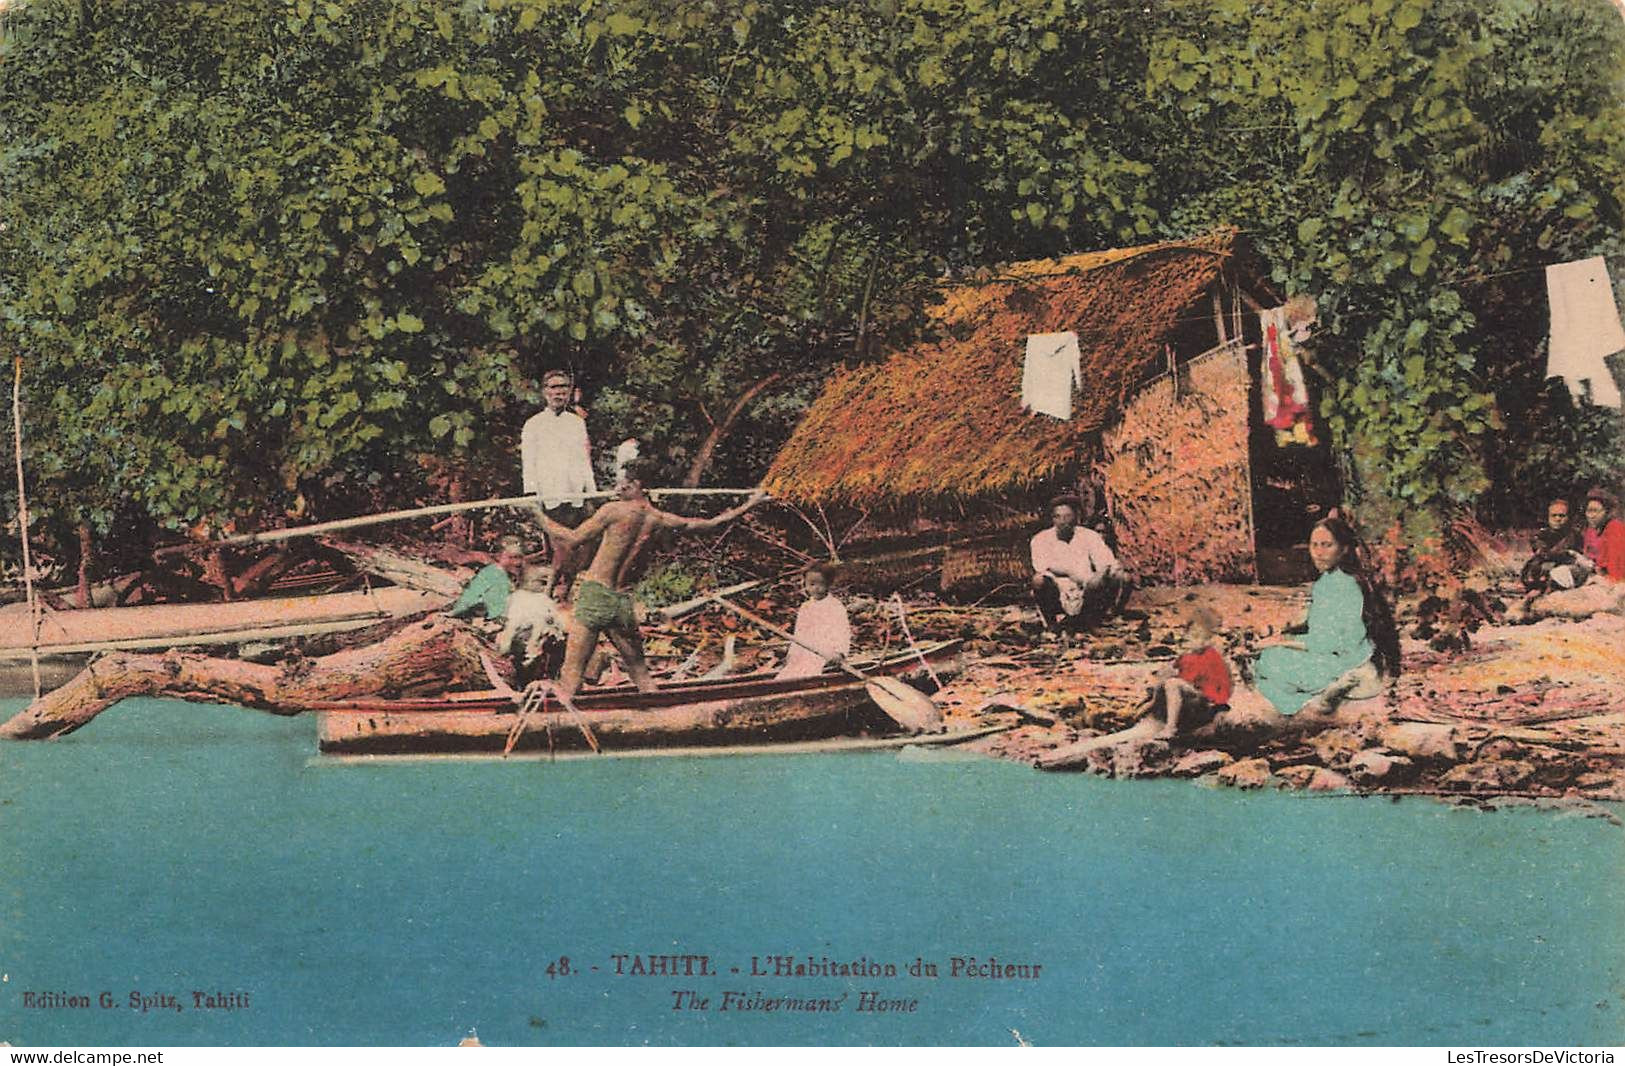 CPA TAHITI - L'habitation Du Pecheur - The Fisherman's Home - Edition G Spitz - Colorisé - Tahiti